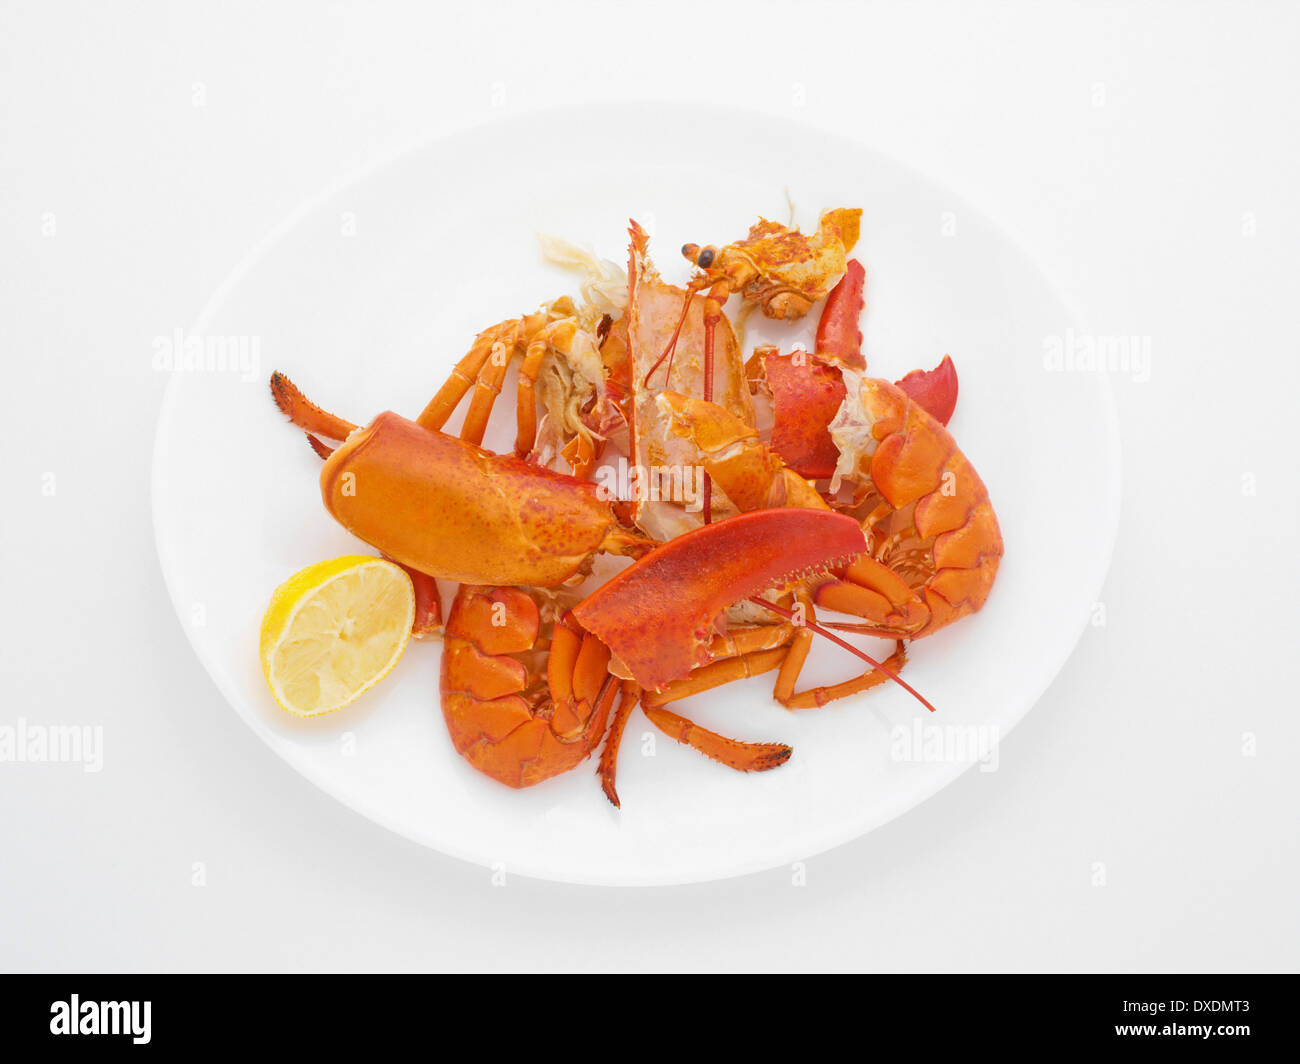 Leftovers of Lobster Dinner, Studio Shot Stock Photo